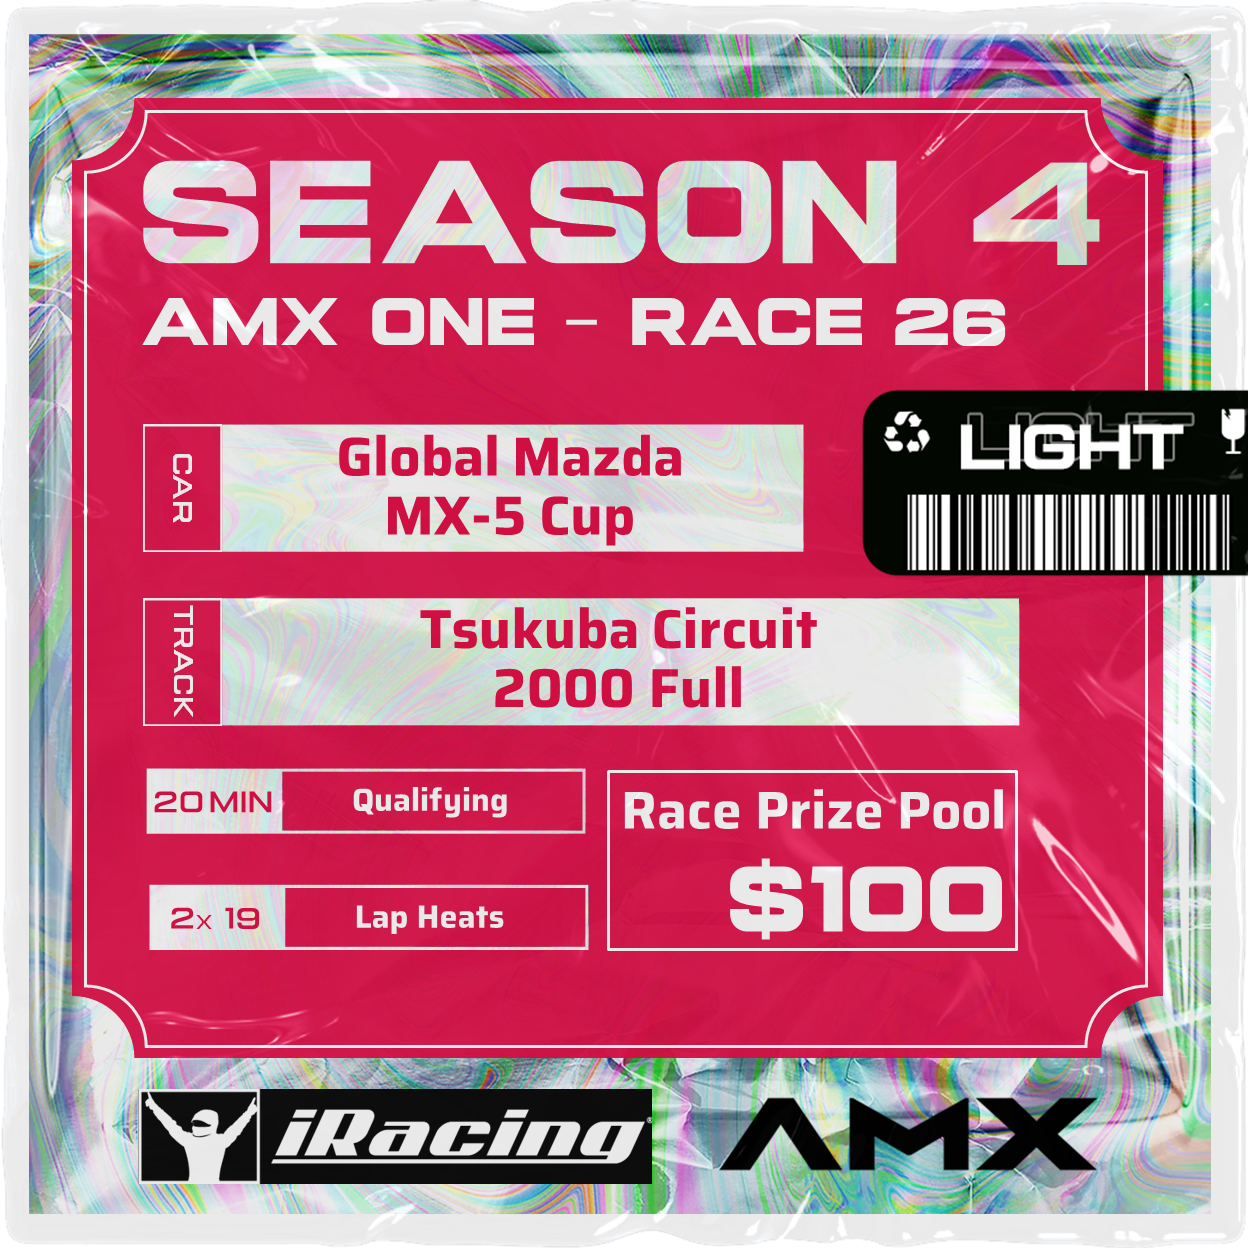 AMX ONE - RACE 26 [4/2 - 5:50 PM GMT]